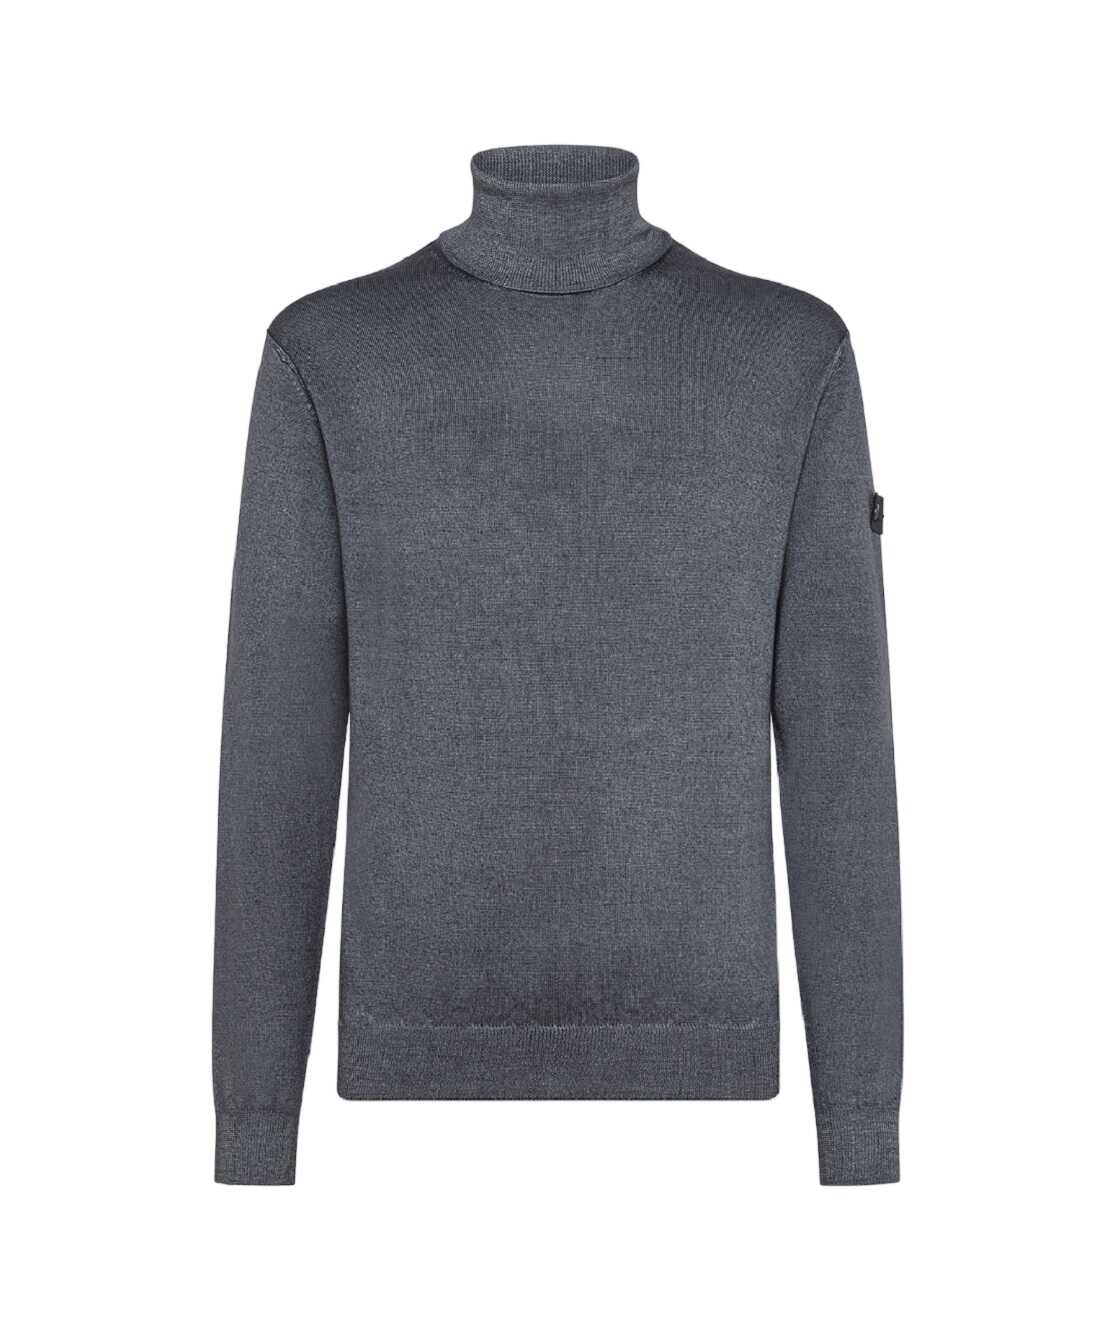 Peuterey Peuterey Turtleneck Sweater Grey